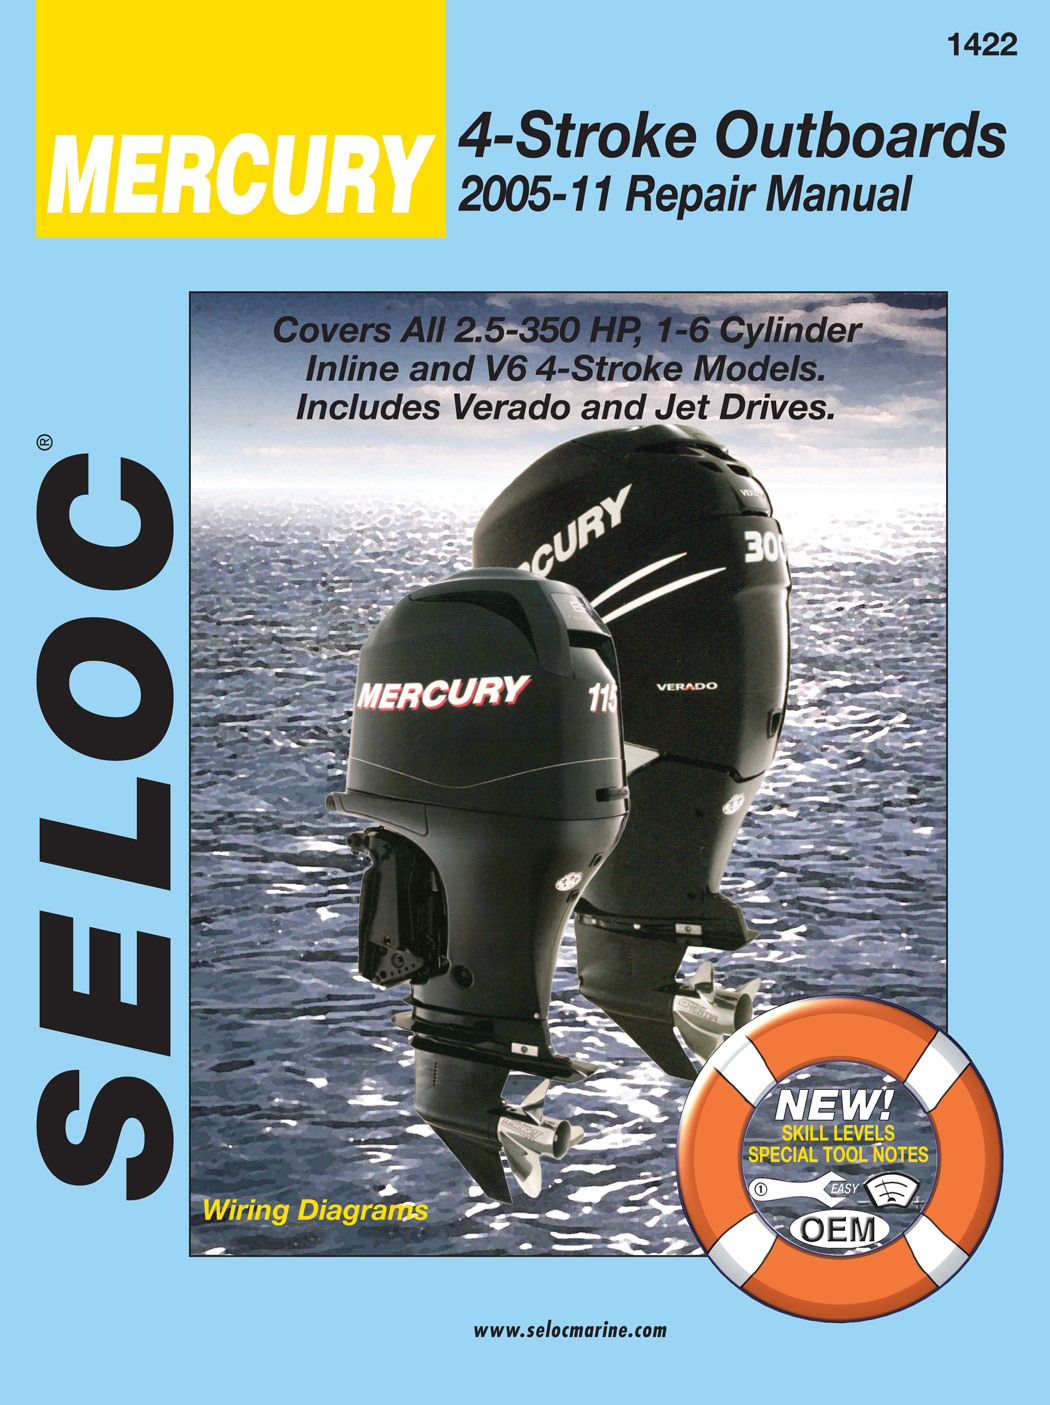 Seloc repair manual for Mercury 4-Stroke Outboards 2005-2011 models